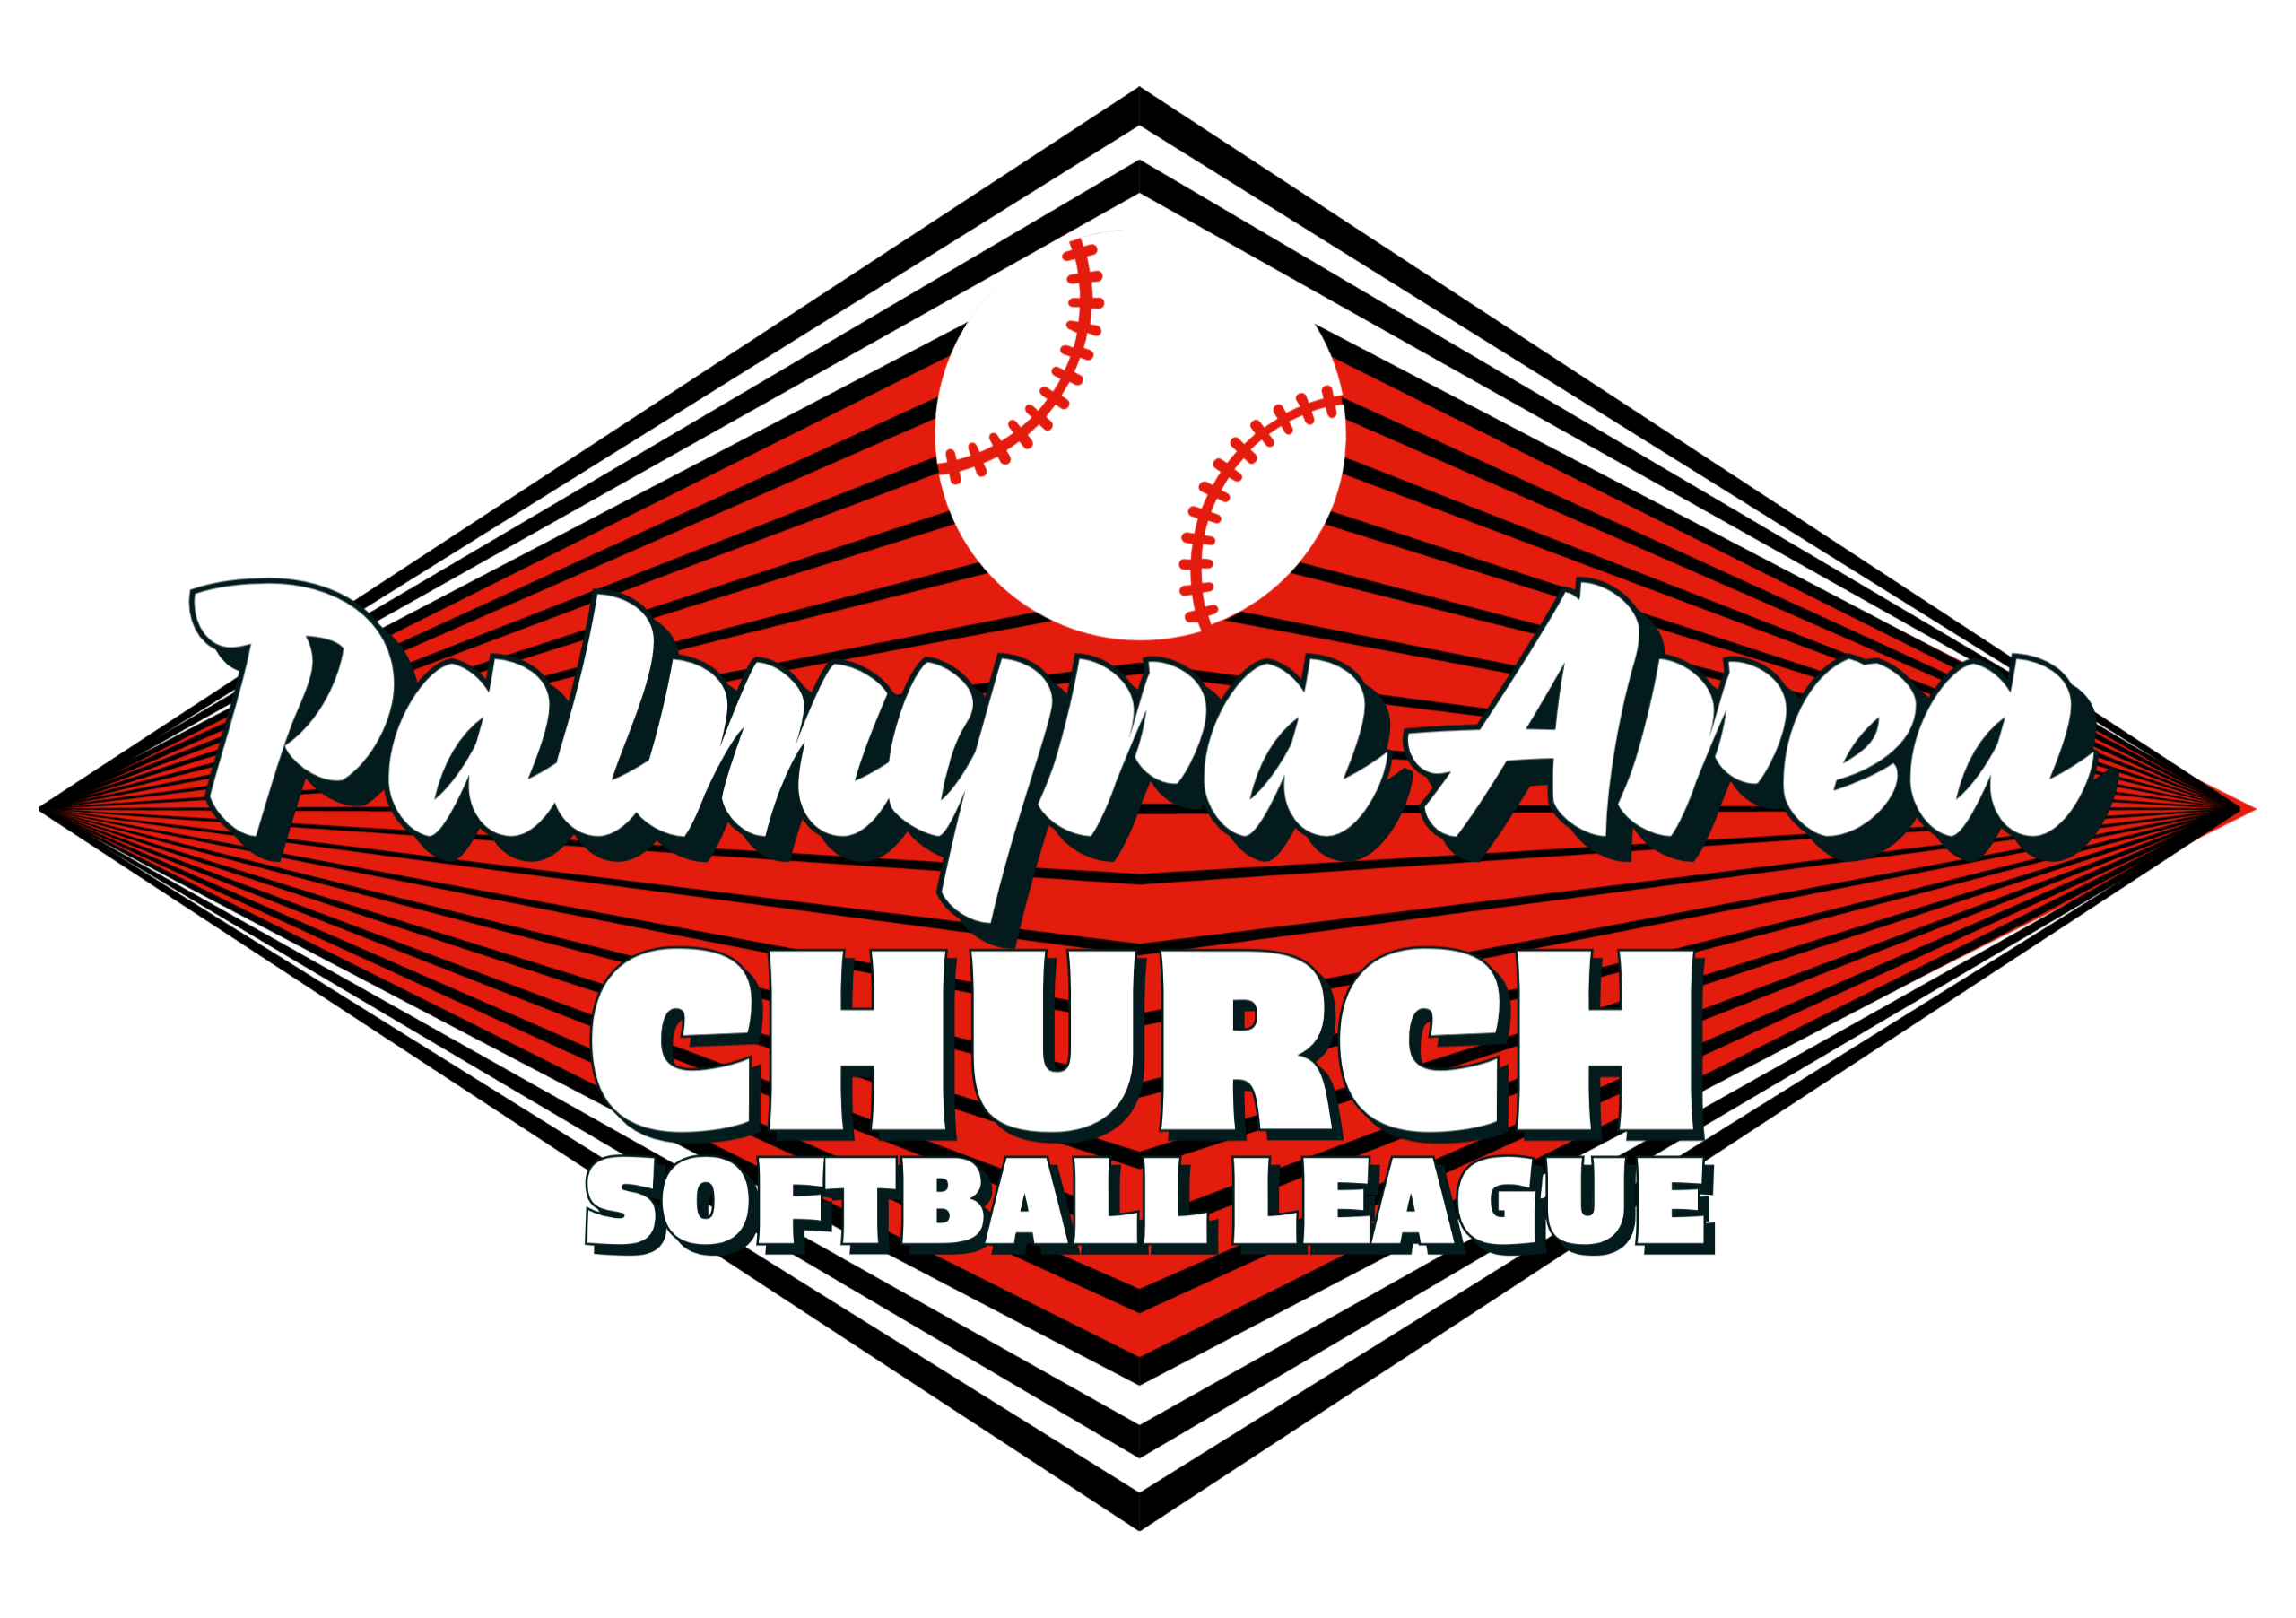 Palmyra Area Church Softball League